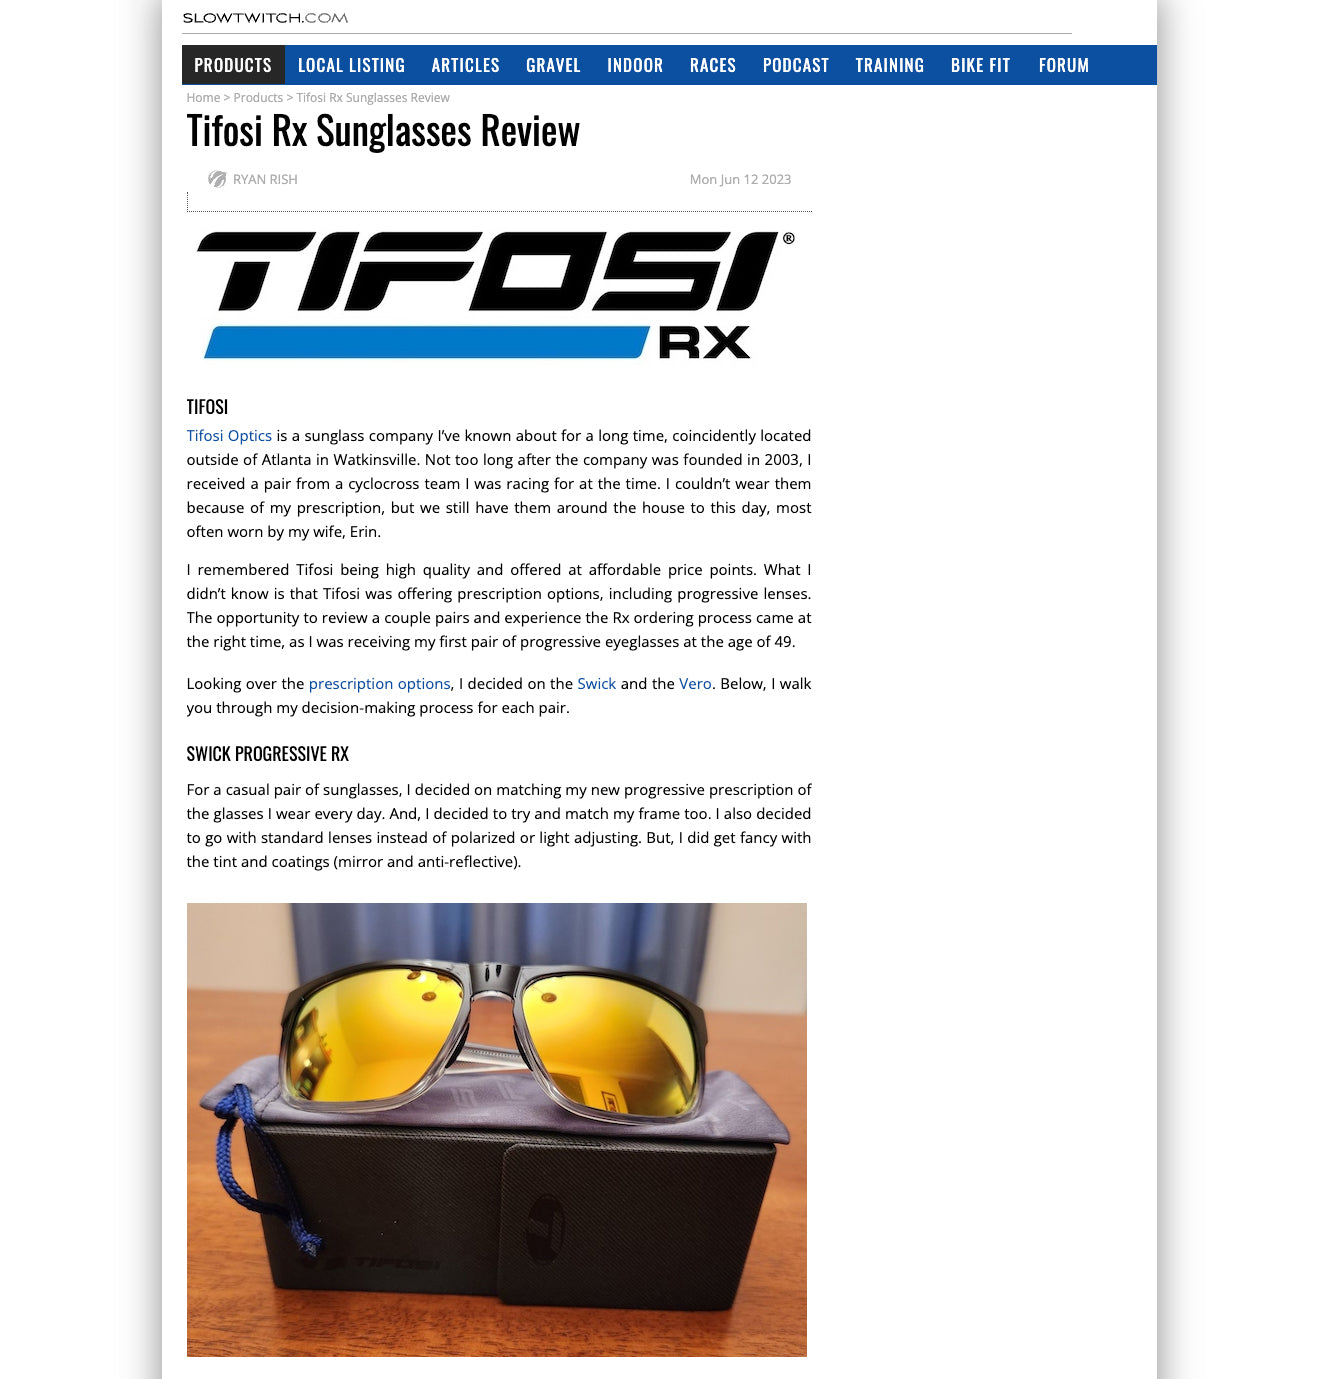 Tifosi Prescription Sunglasses Review - SlowTwitch.com June 2023